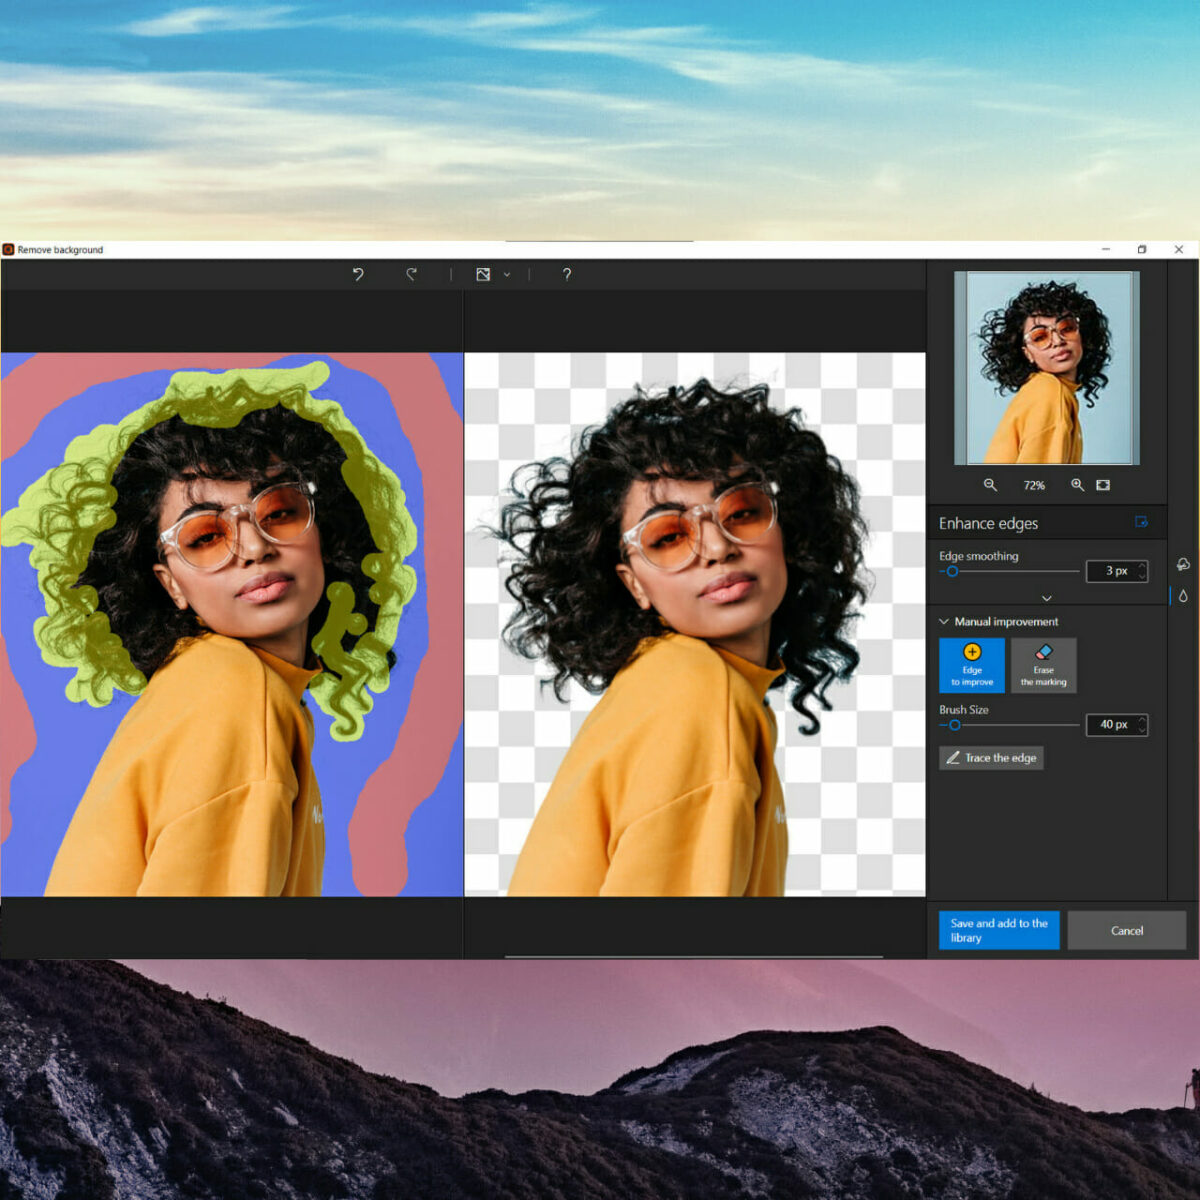 Phần mềm xóa nền ảnh tốt nhất cho máy tính giúp bạn dễ dàng xóa nền ảnh và tạo ra những hình ảnh đẹp mắt. Với công nghệ mới nhất và chức năng tùy chỉnh linh hoạt, phần mềm này đem lại cho bạn những bức ảnh đẹp nhất. Hãy cùng khám phá phần mềm này tại đây.